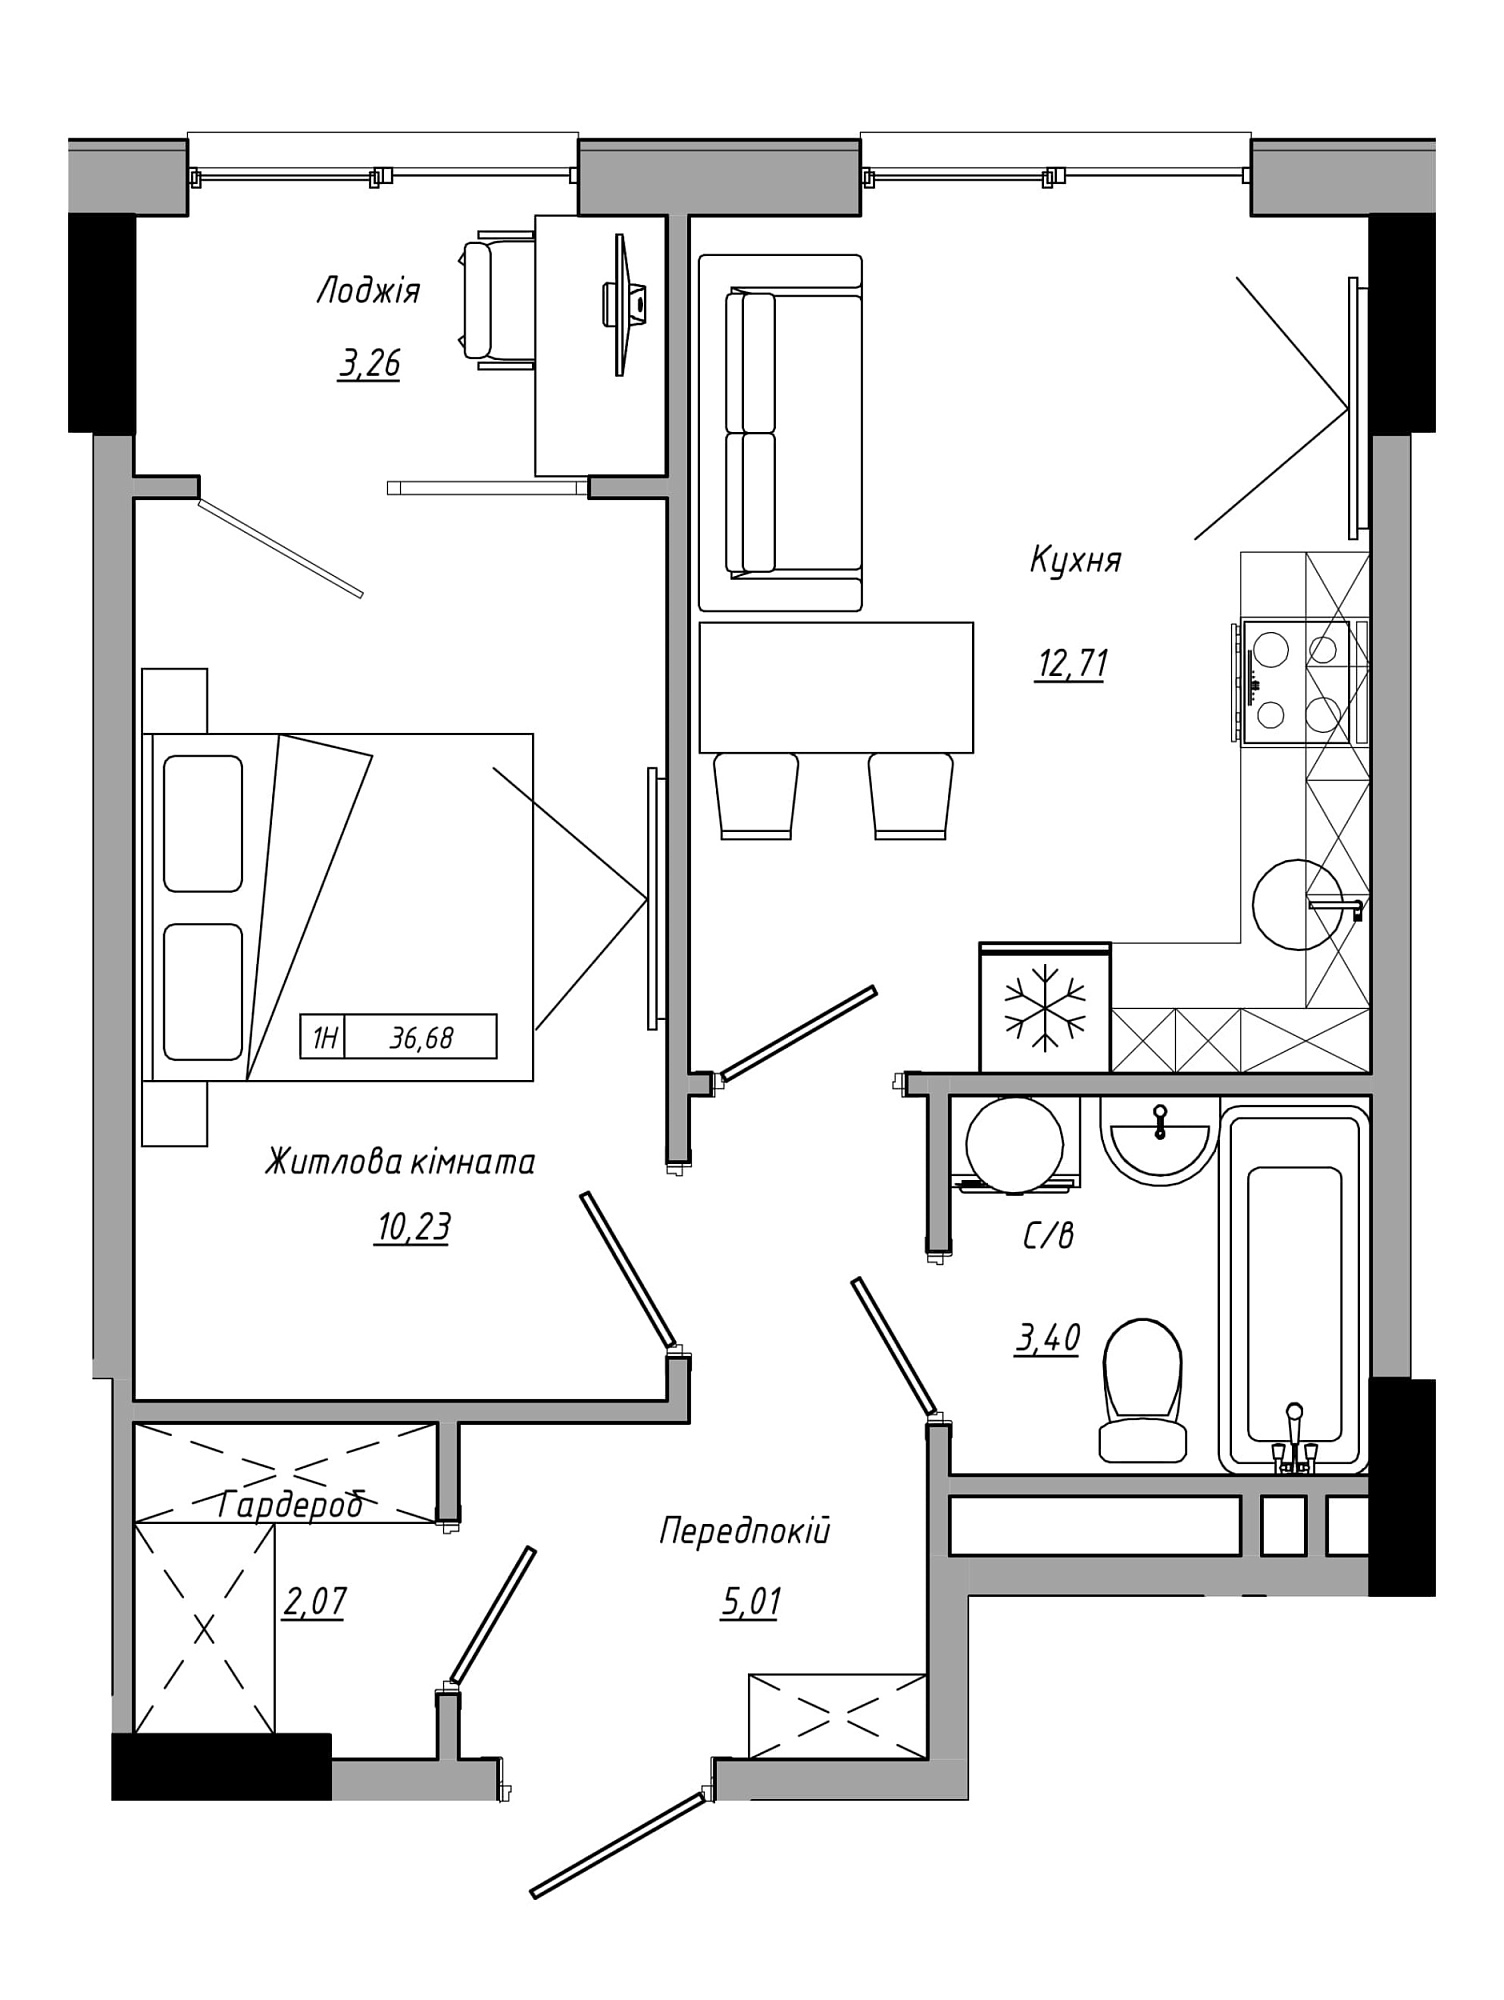 Планировка 1-к квартира площей 36.68м2, AB-21-14/00116.